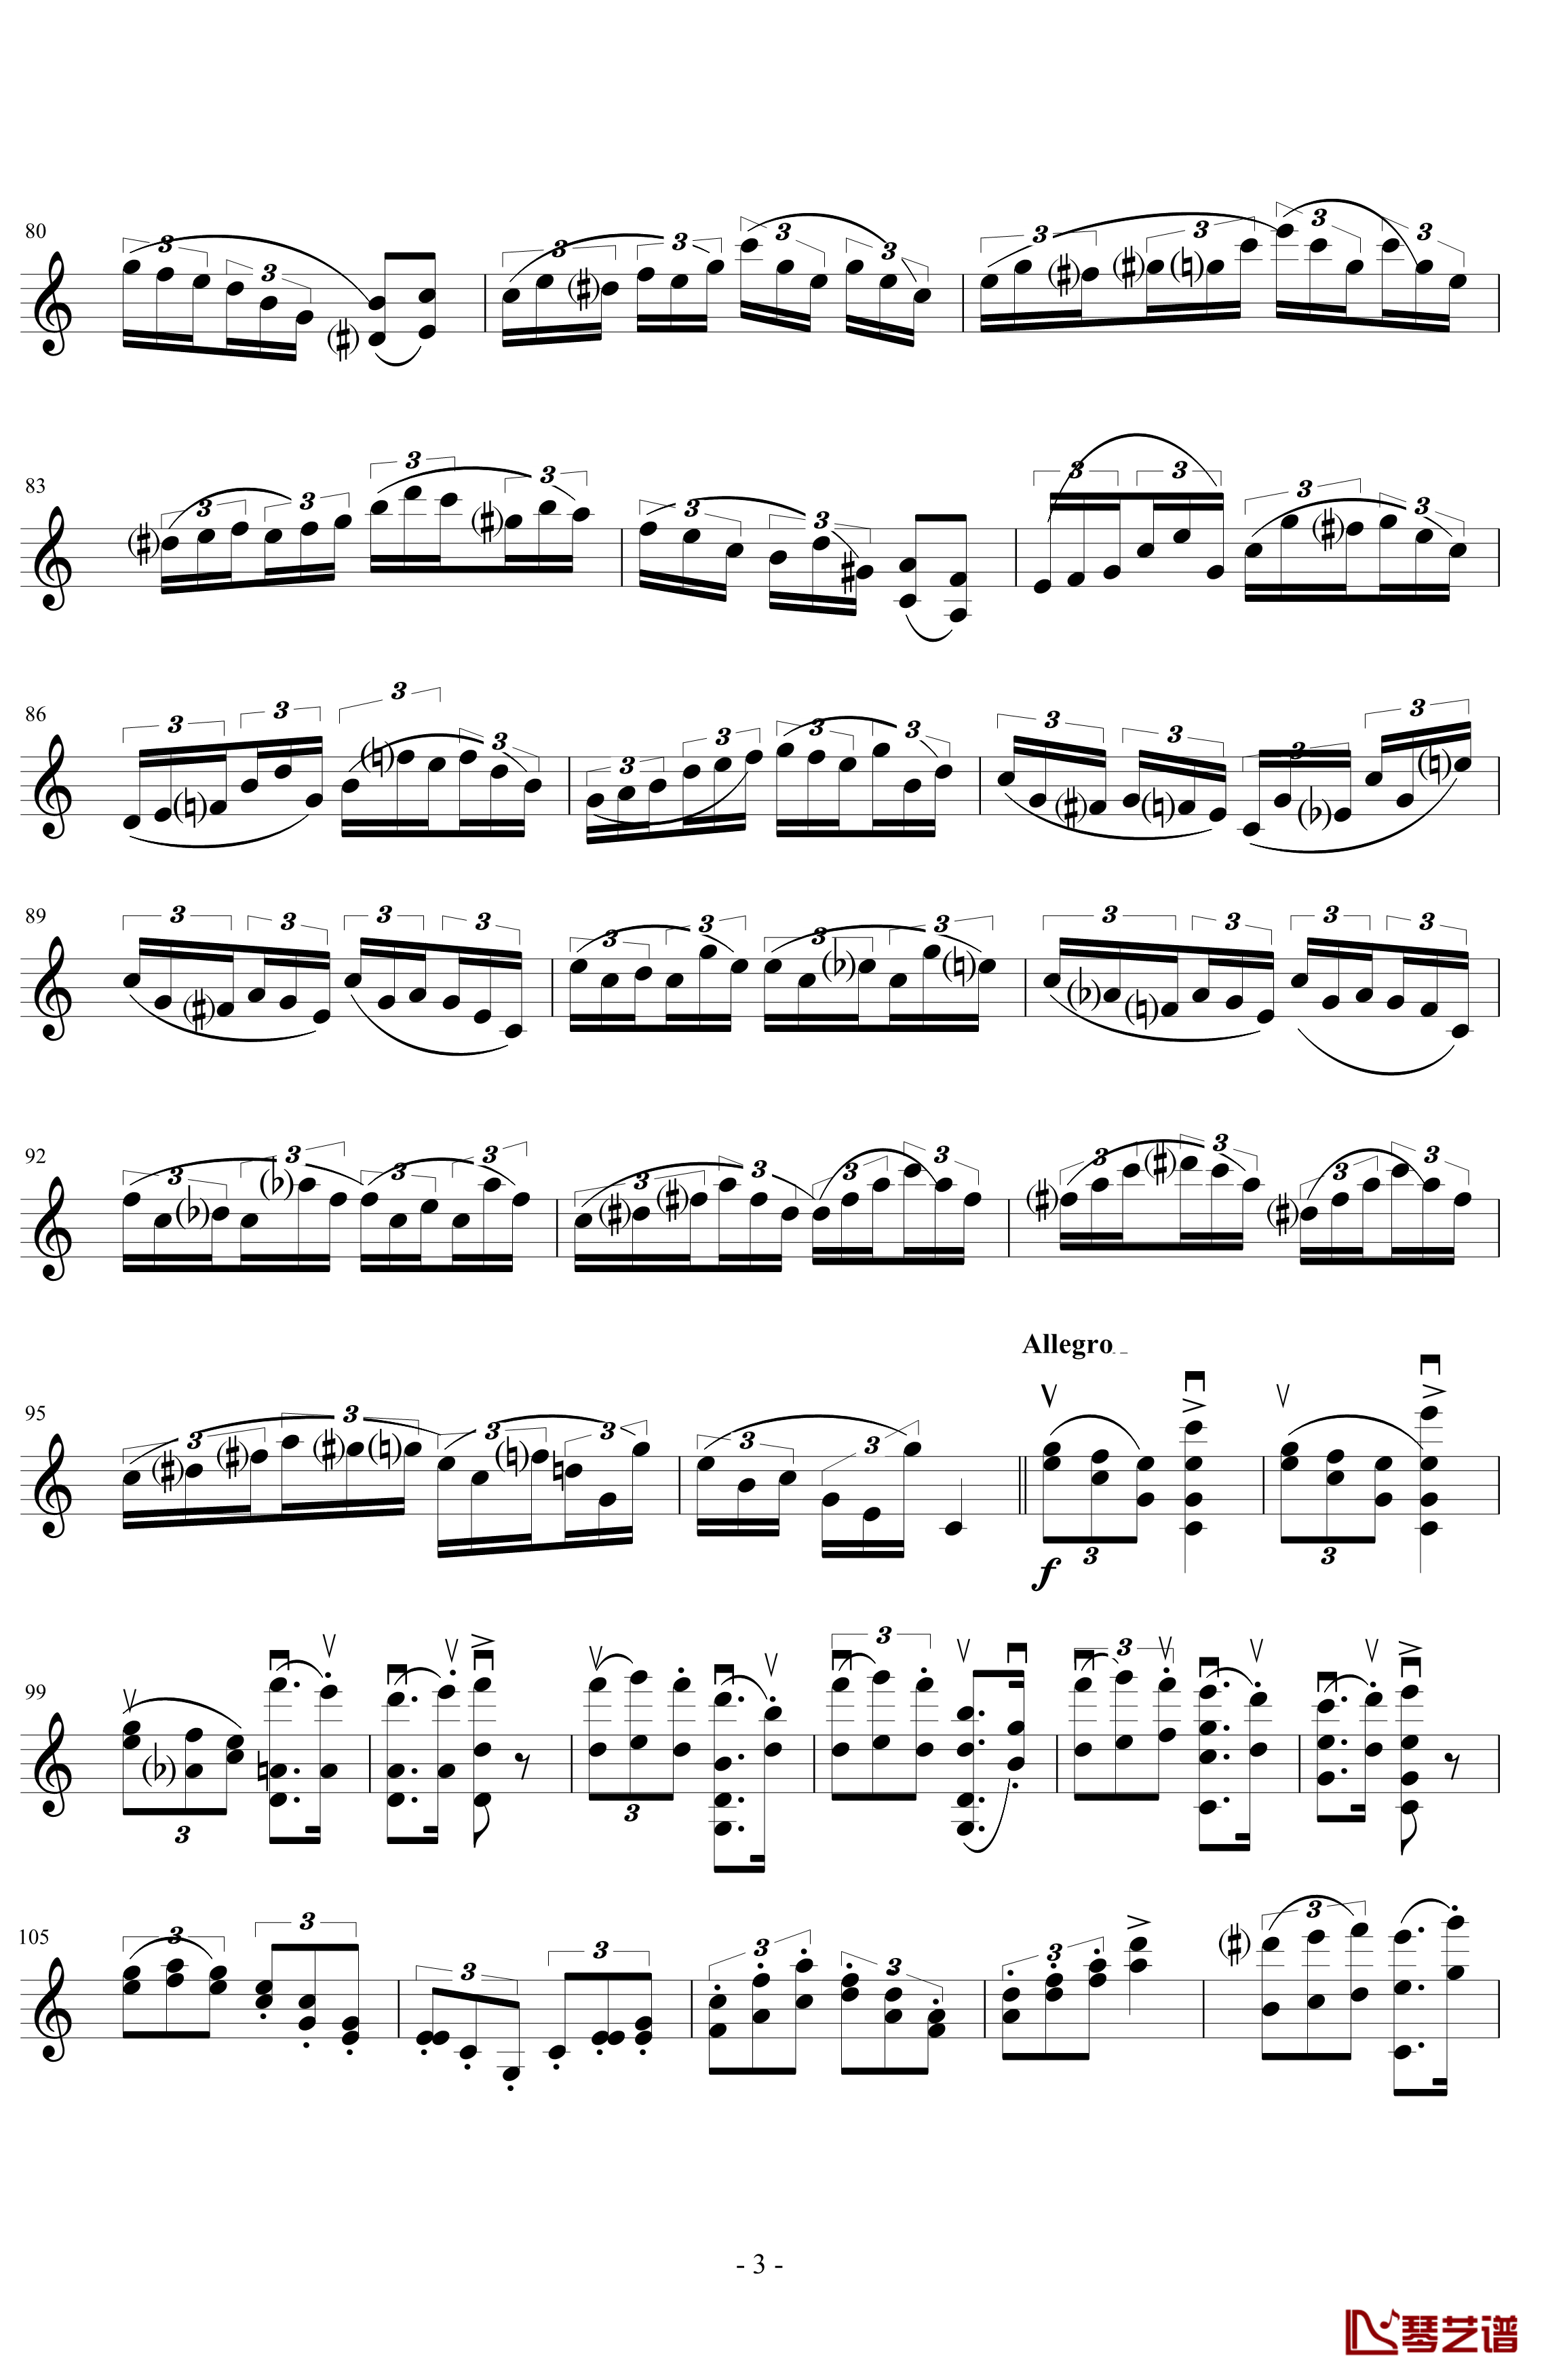 莫扎特主题炫技变奏曲钢琴谱-小提琴版-莫扎特3